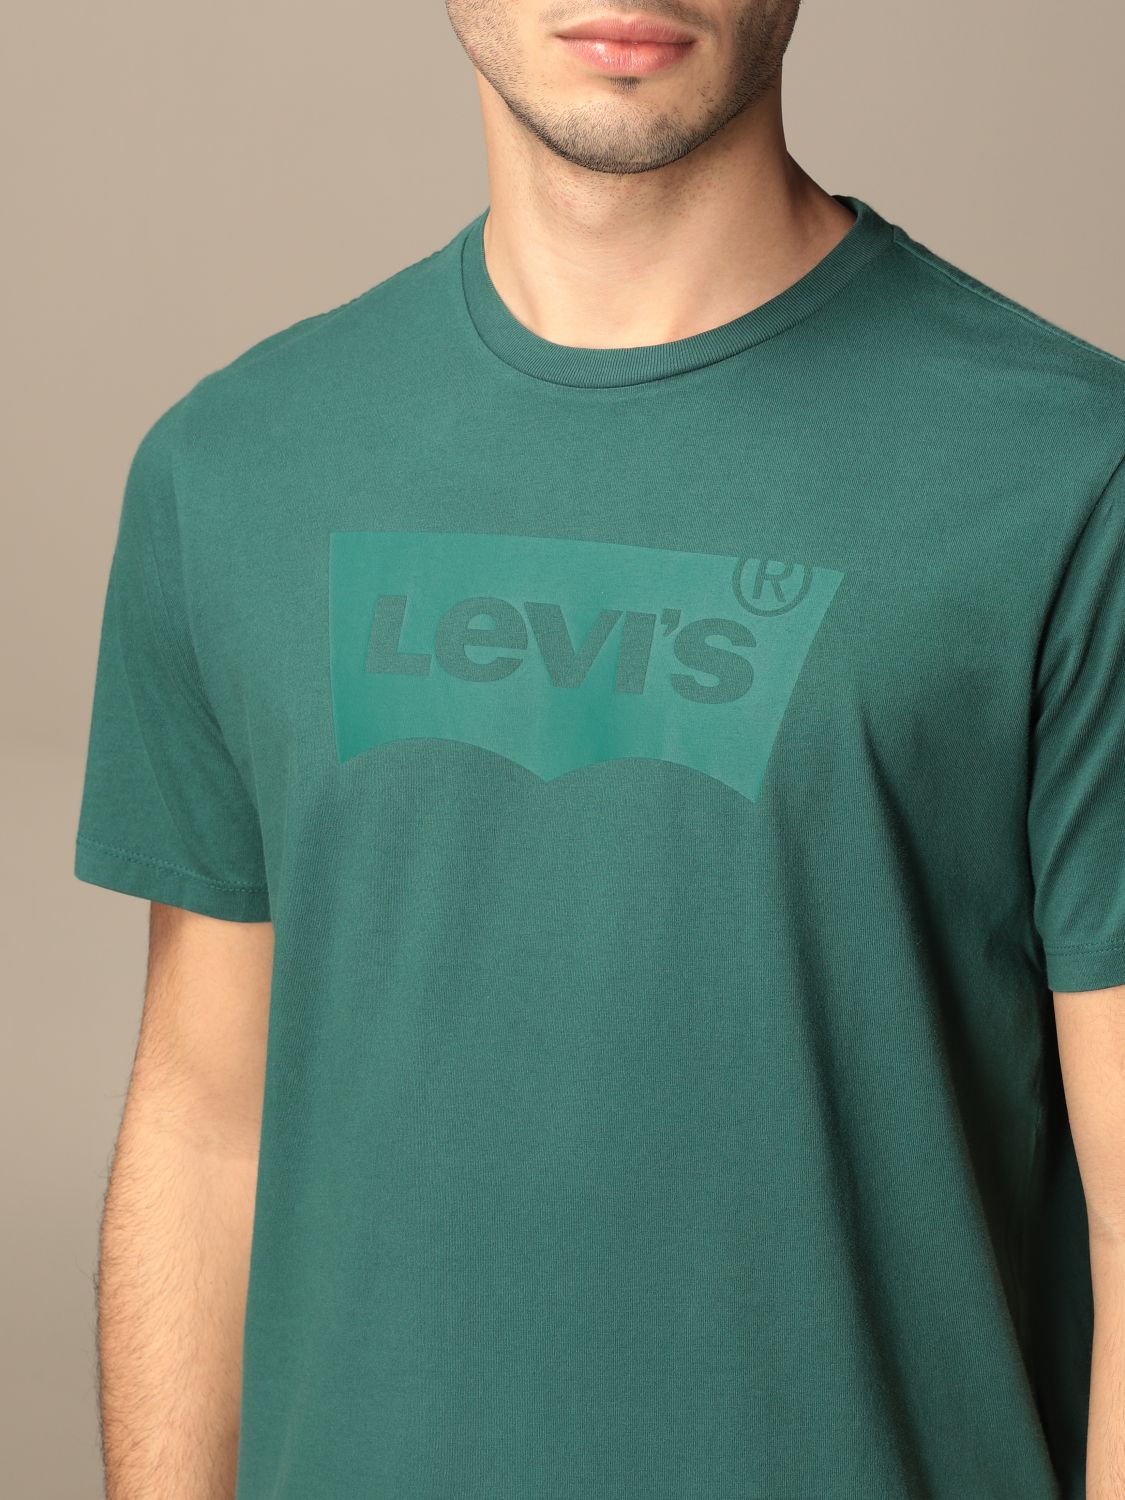 levis t shirt green